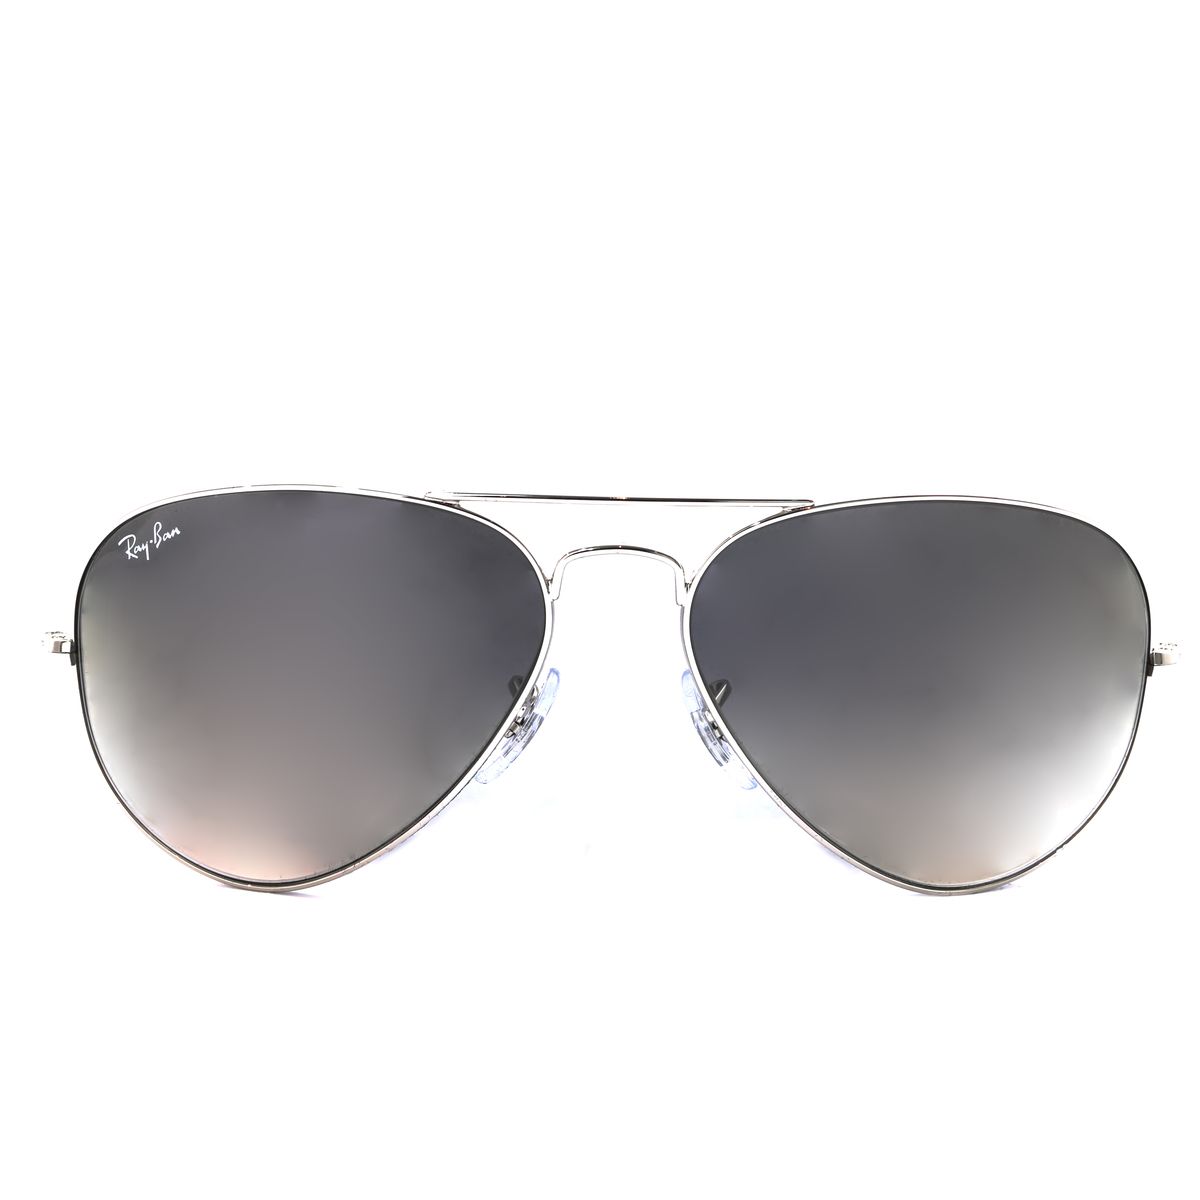 RB3025 Pilot Sunglasses 0003 32 - size 62